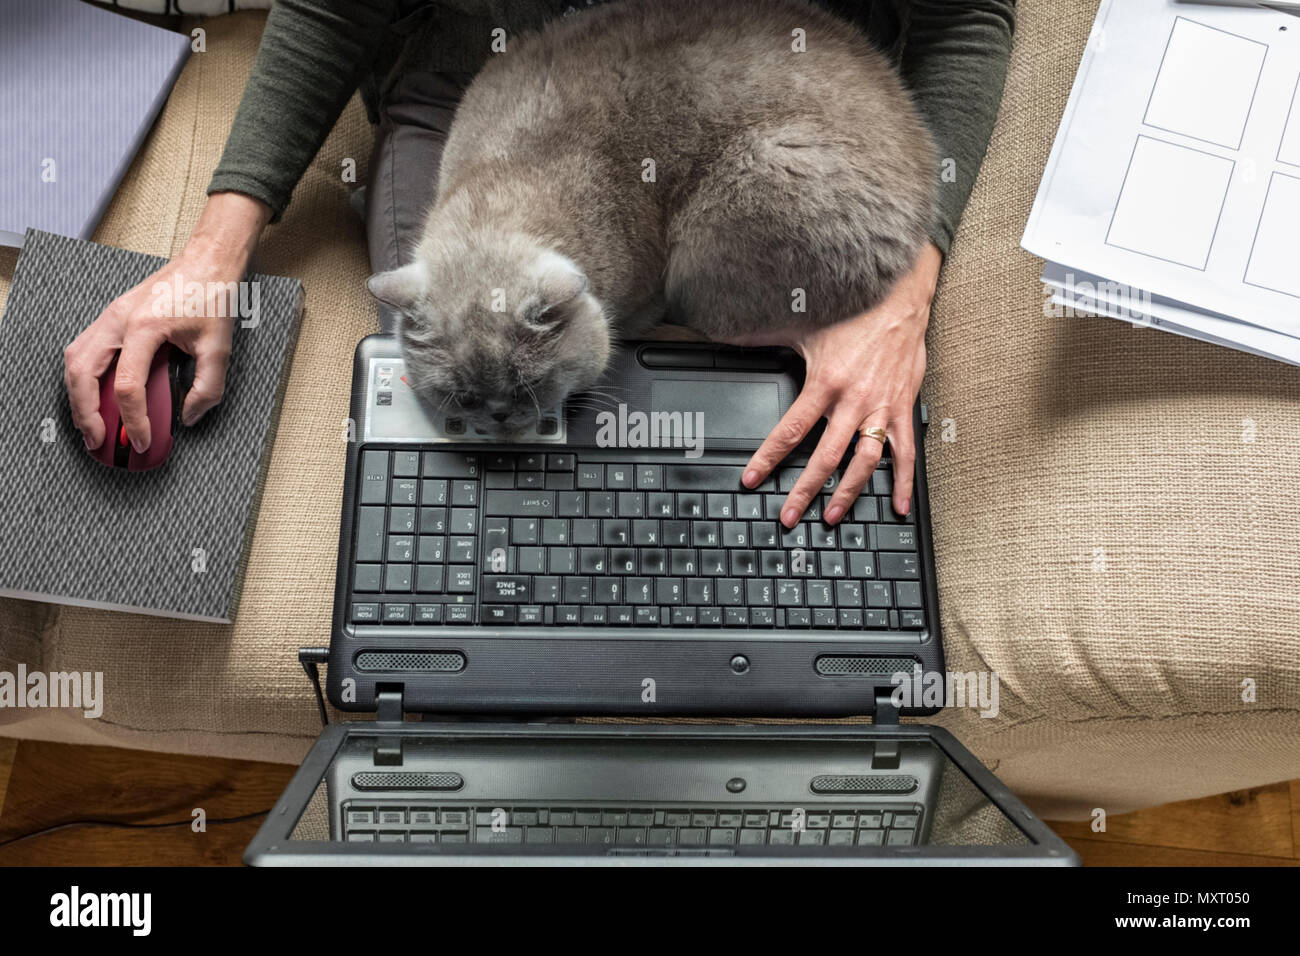 Une femme assise sur un canapé avec un chat gris endormi sur son ordinateur portable. Banque D'Images